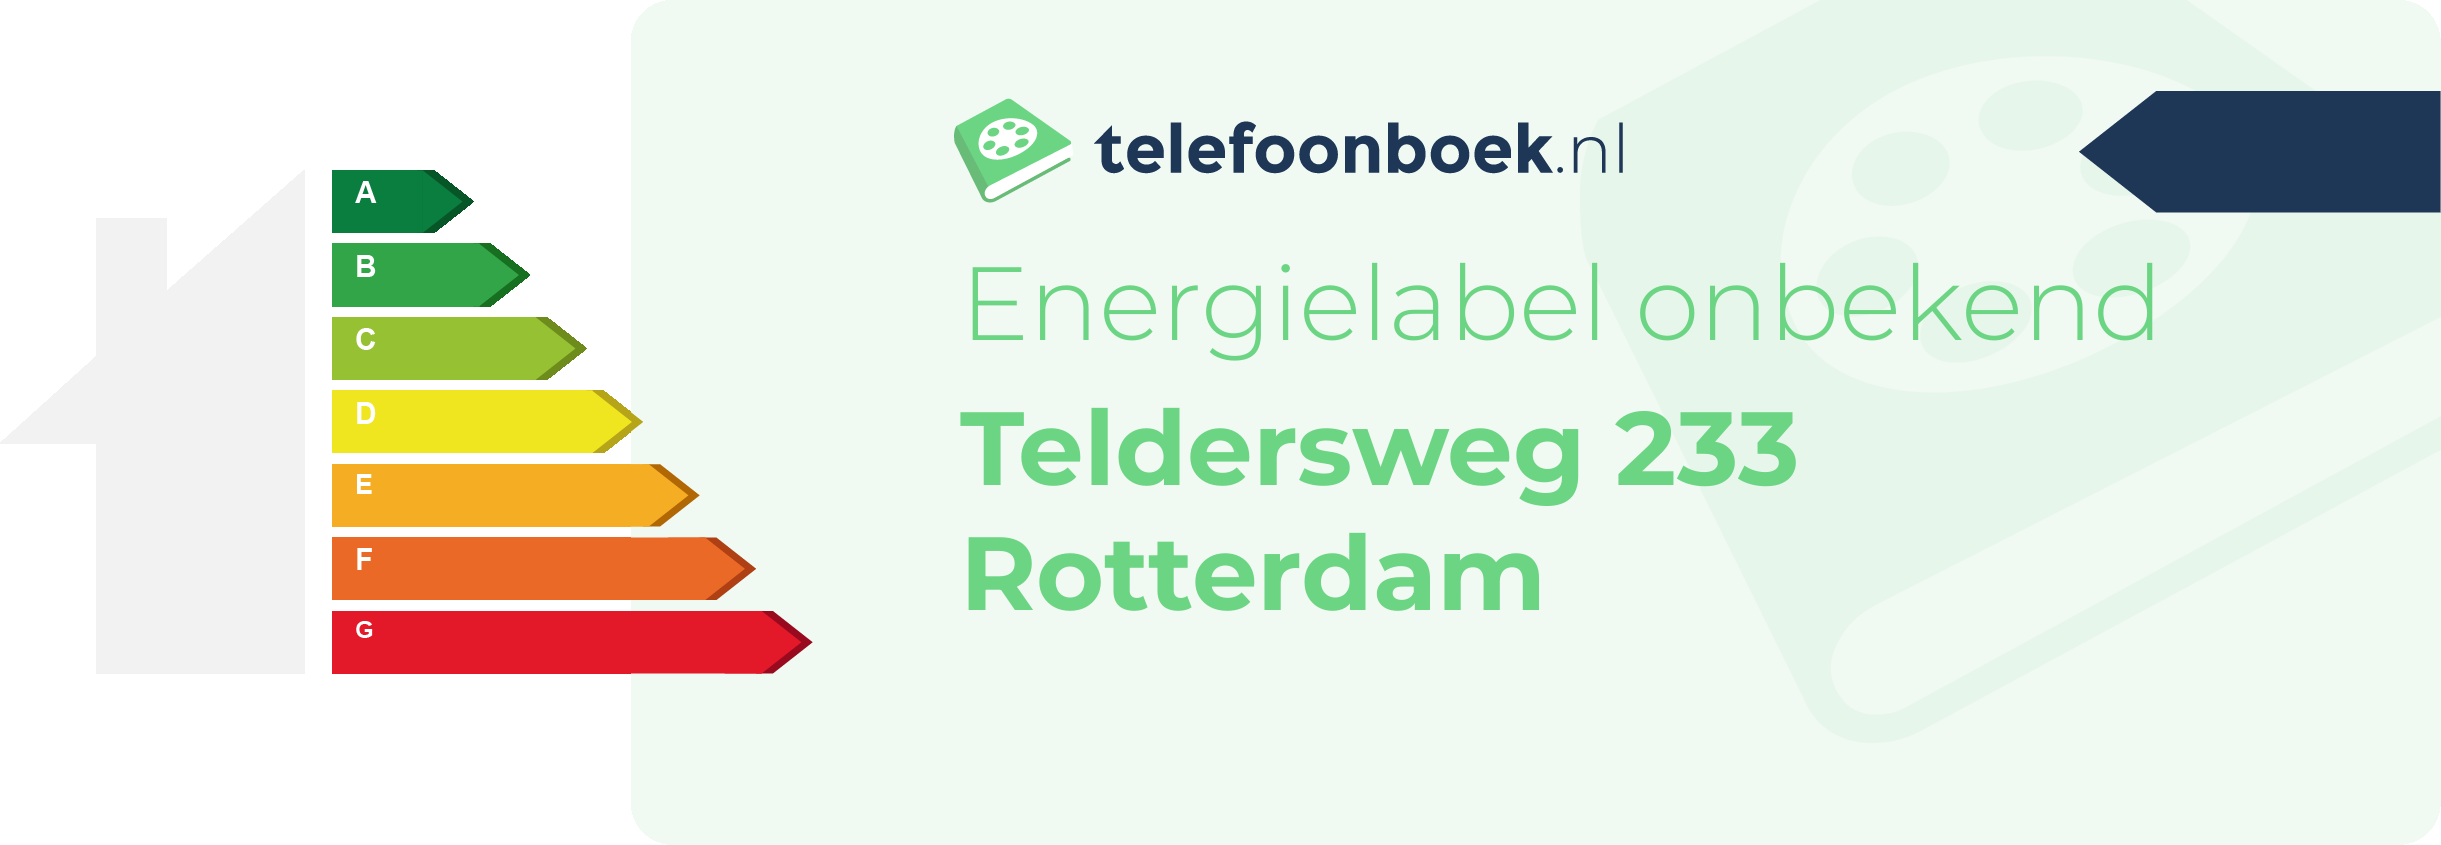 Energielabel Teldersweg 233 Rotterdam